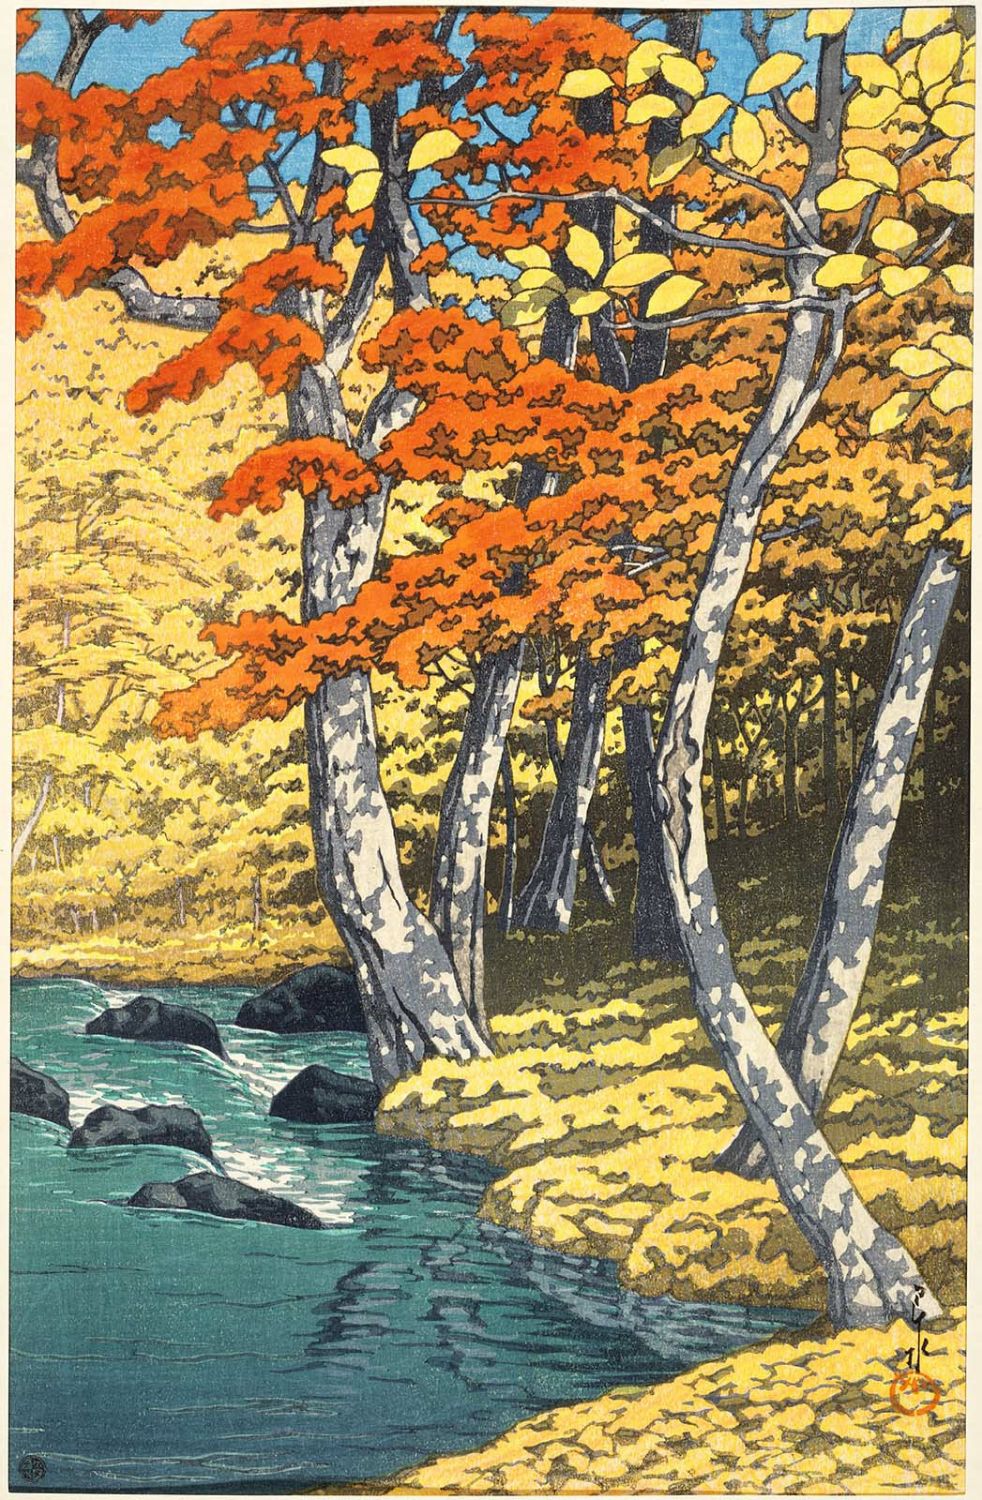 奥入瀬的秋季 by Hasui Kawase - 1933 年 - 36.51 × 24.13 釐米 